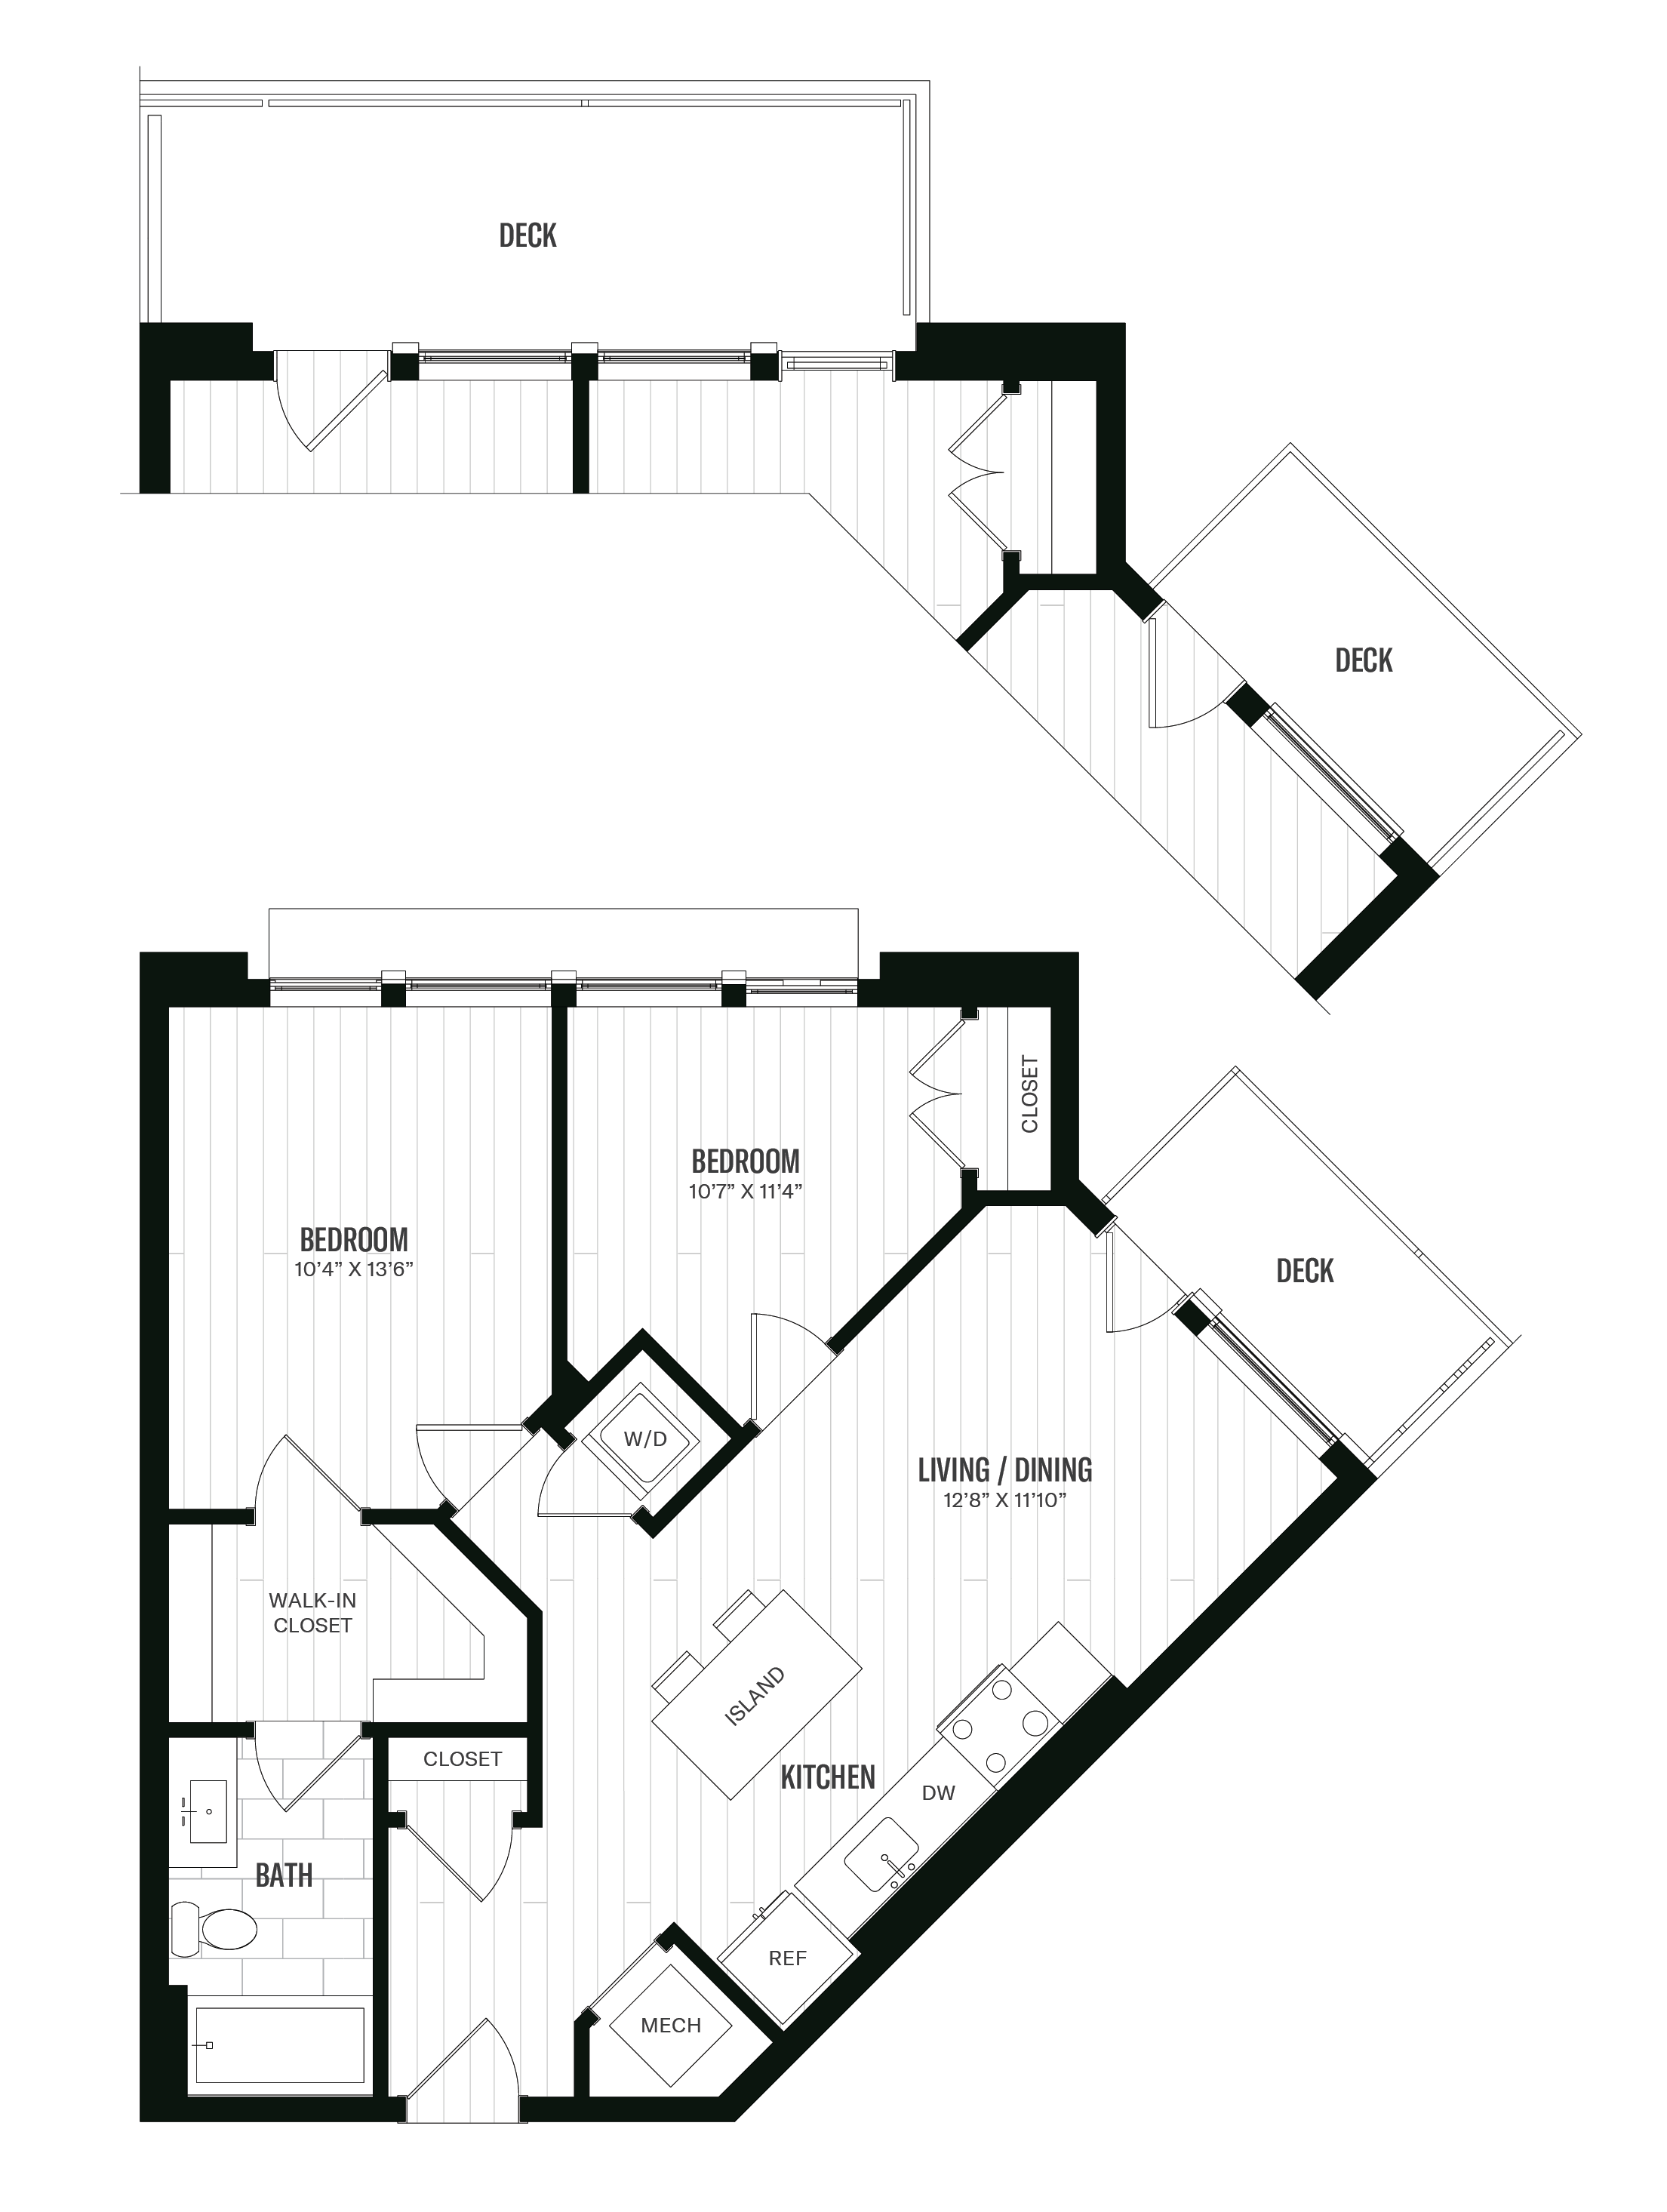 Floorplan image of unit 416